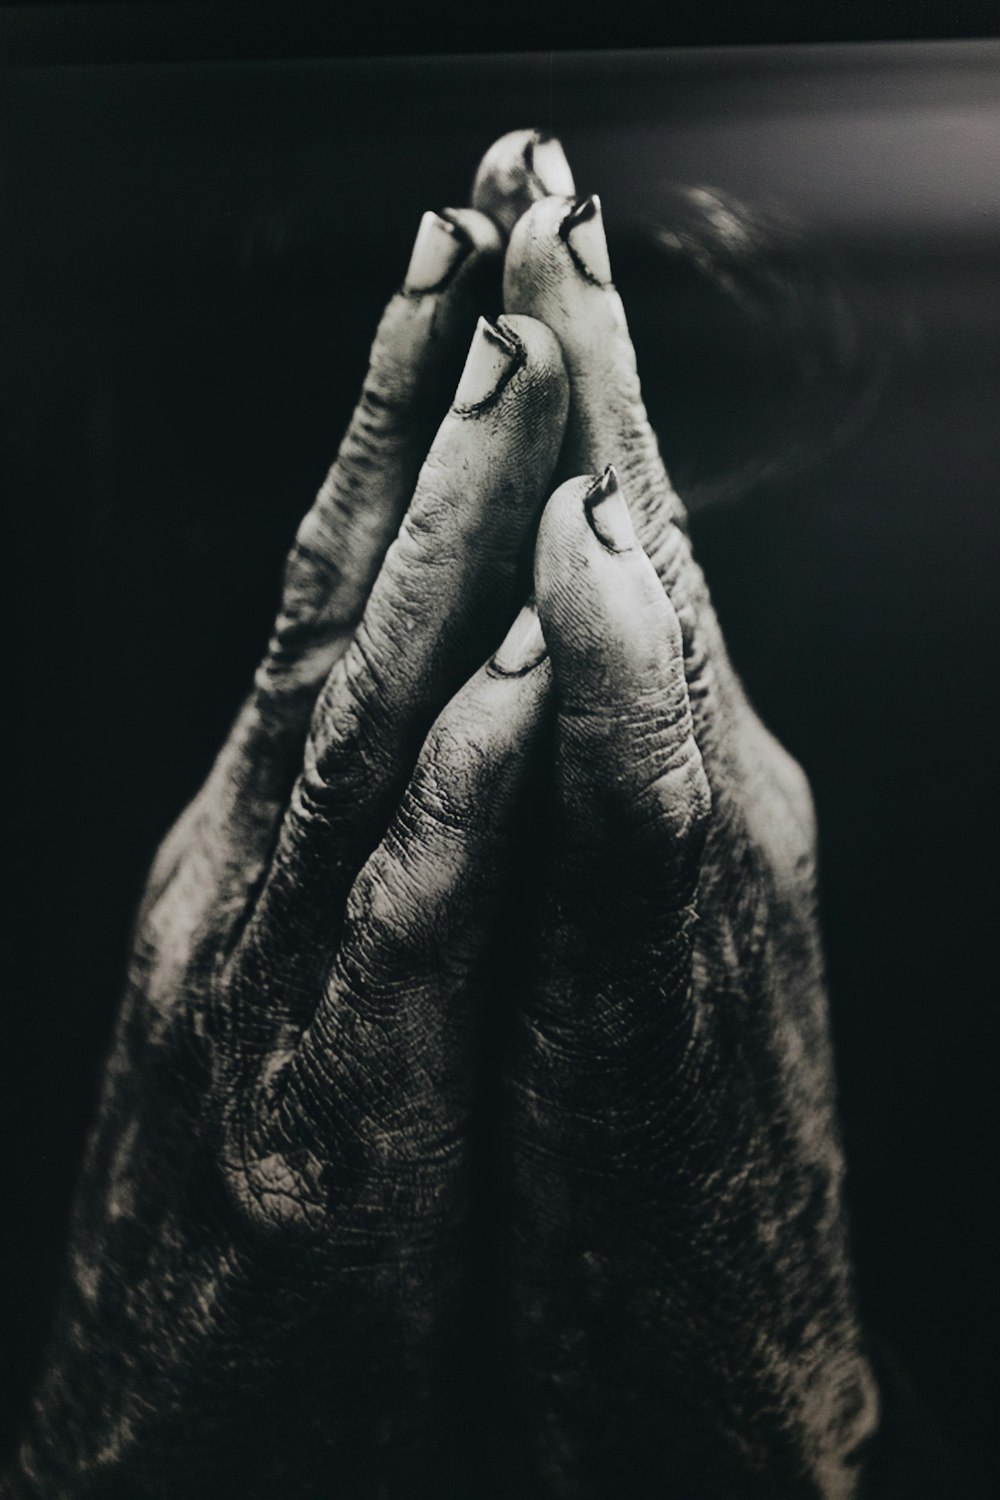 Fotografía en escala de grises de manos orando